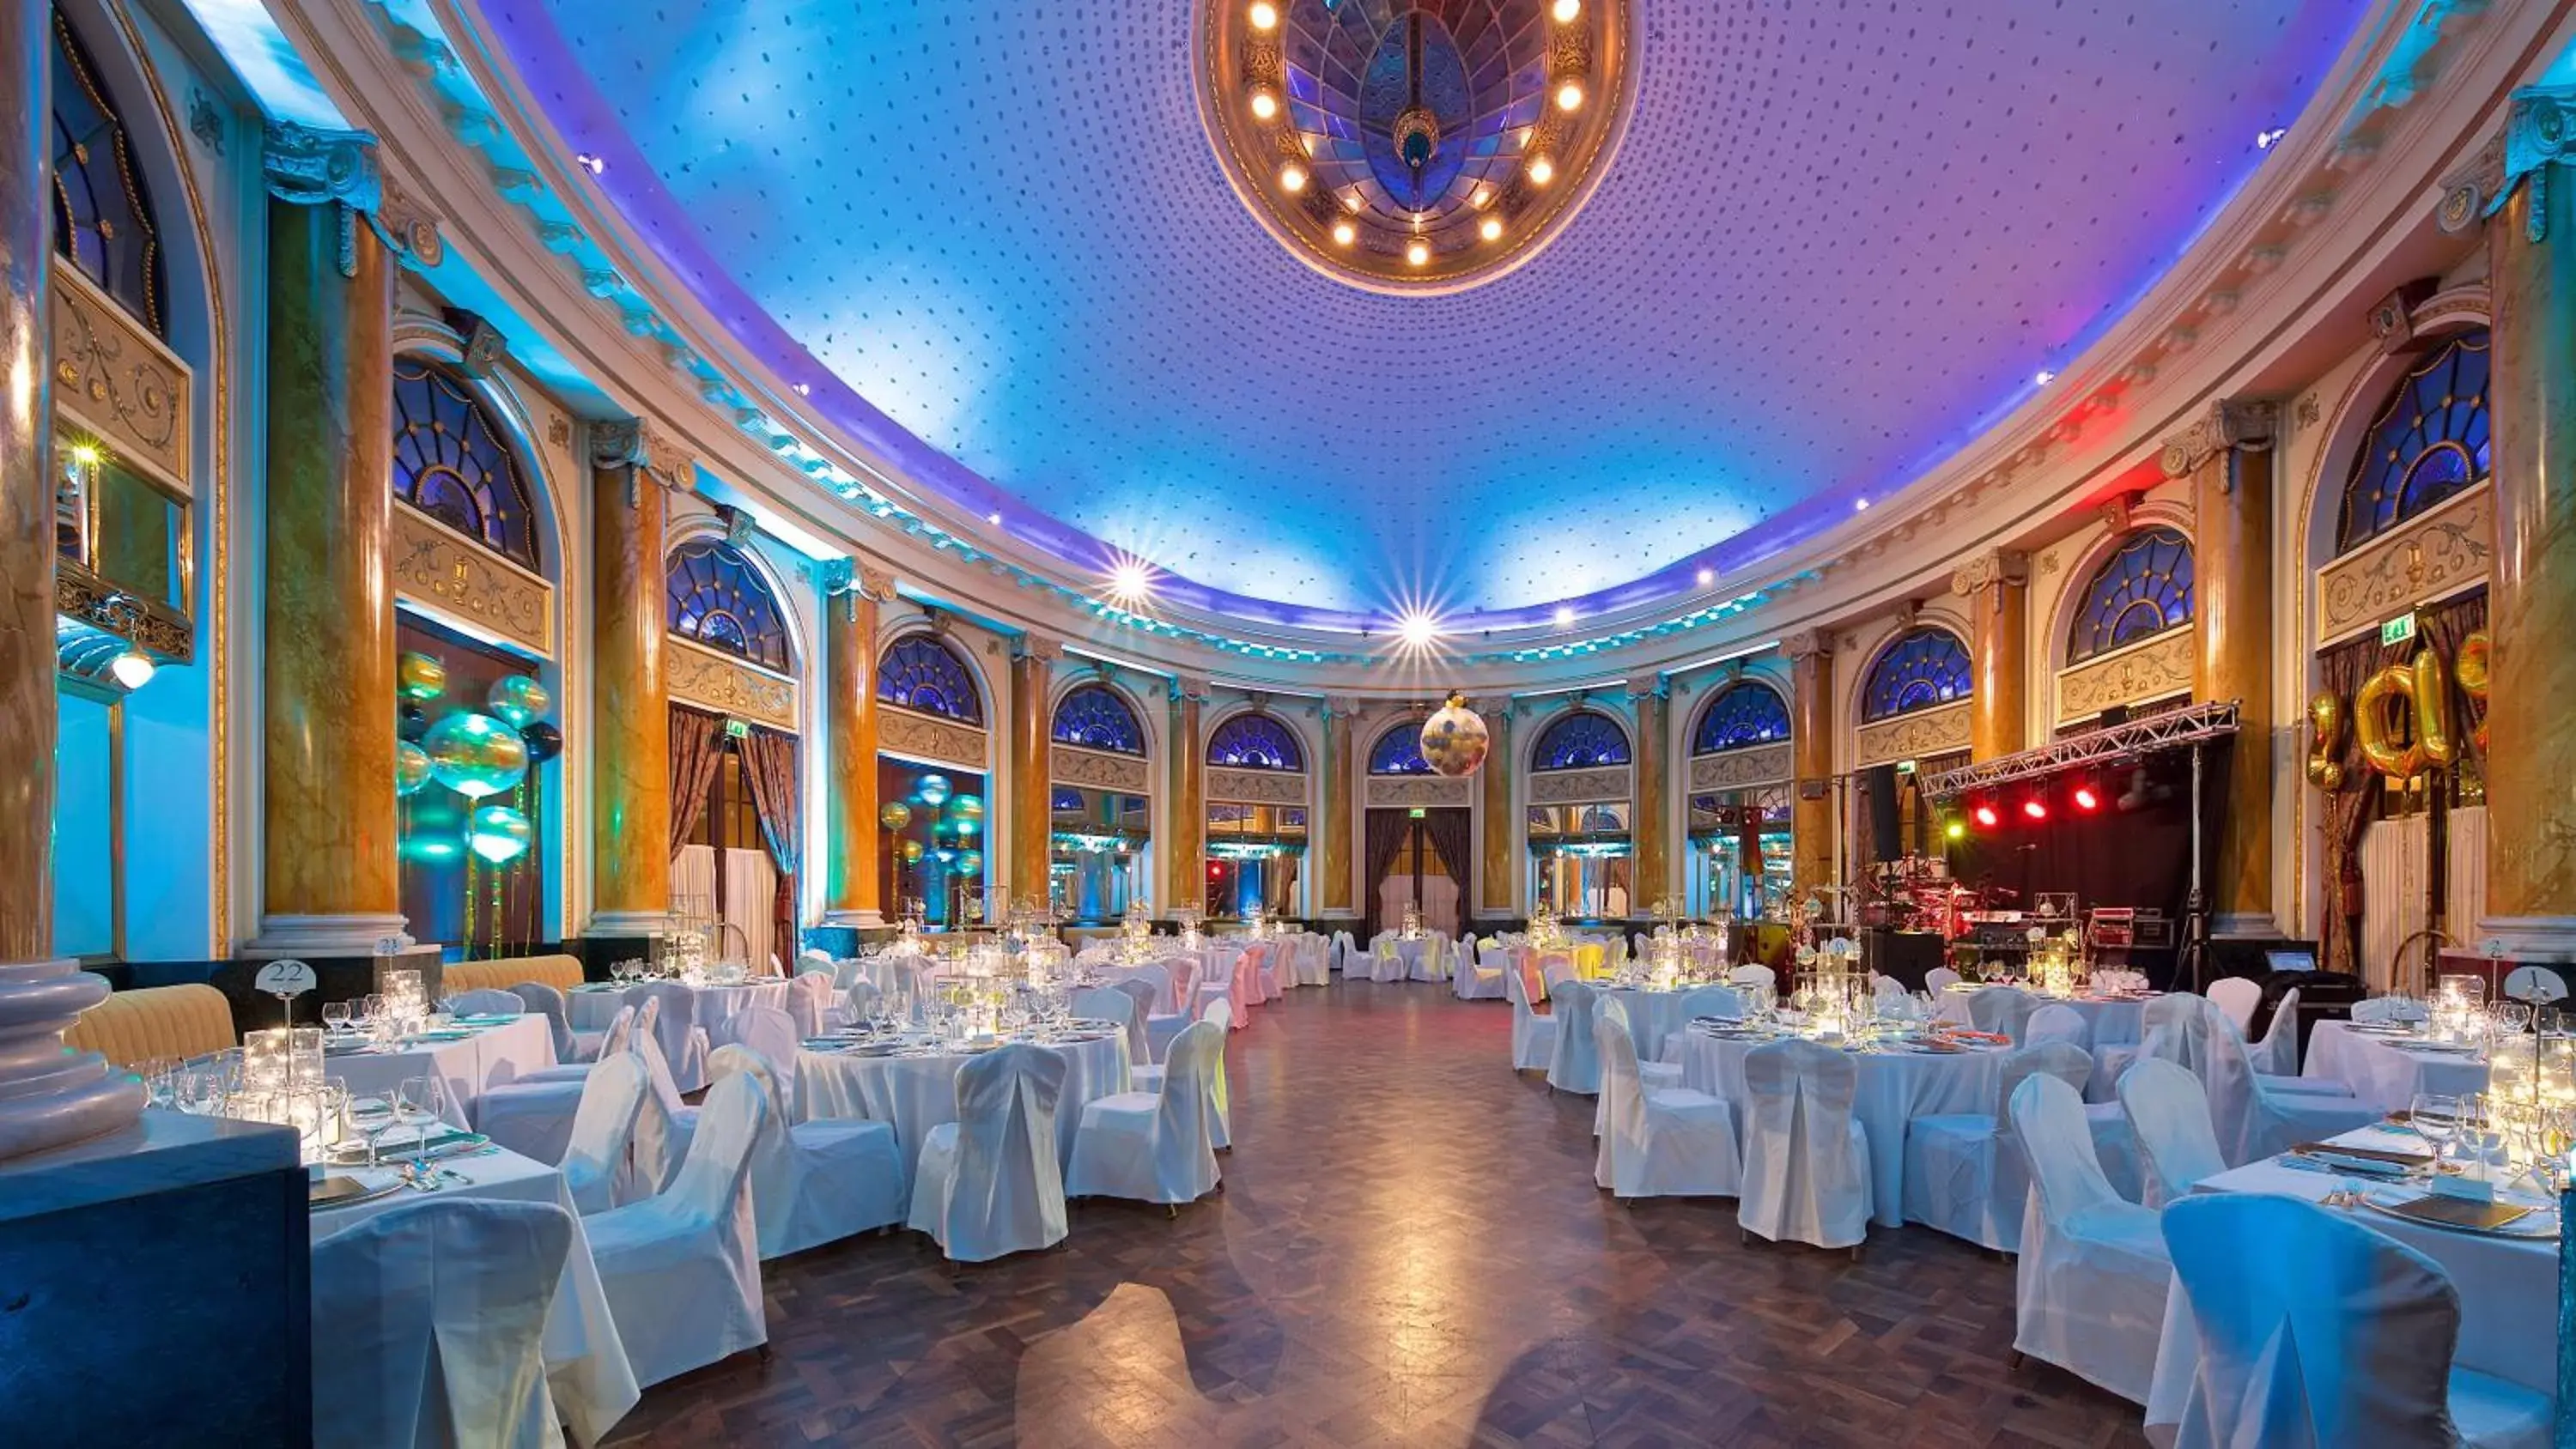 Banquet/Function facilities, Banquet Facilities in Esplanade Zagreb Hotel